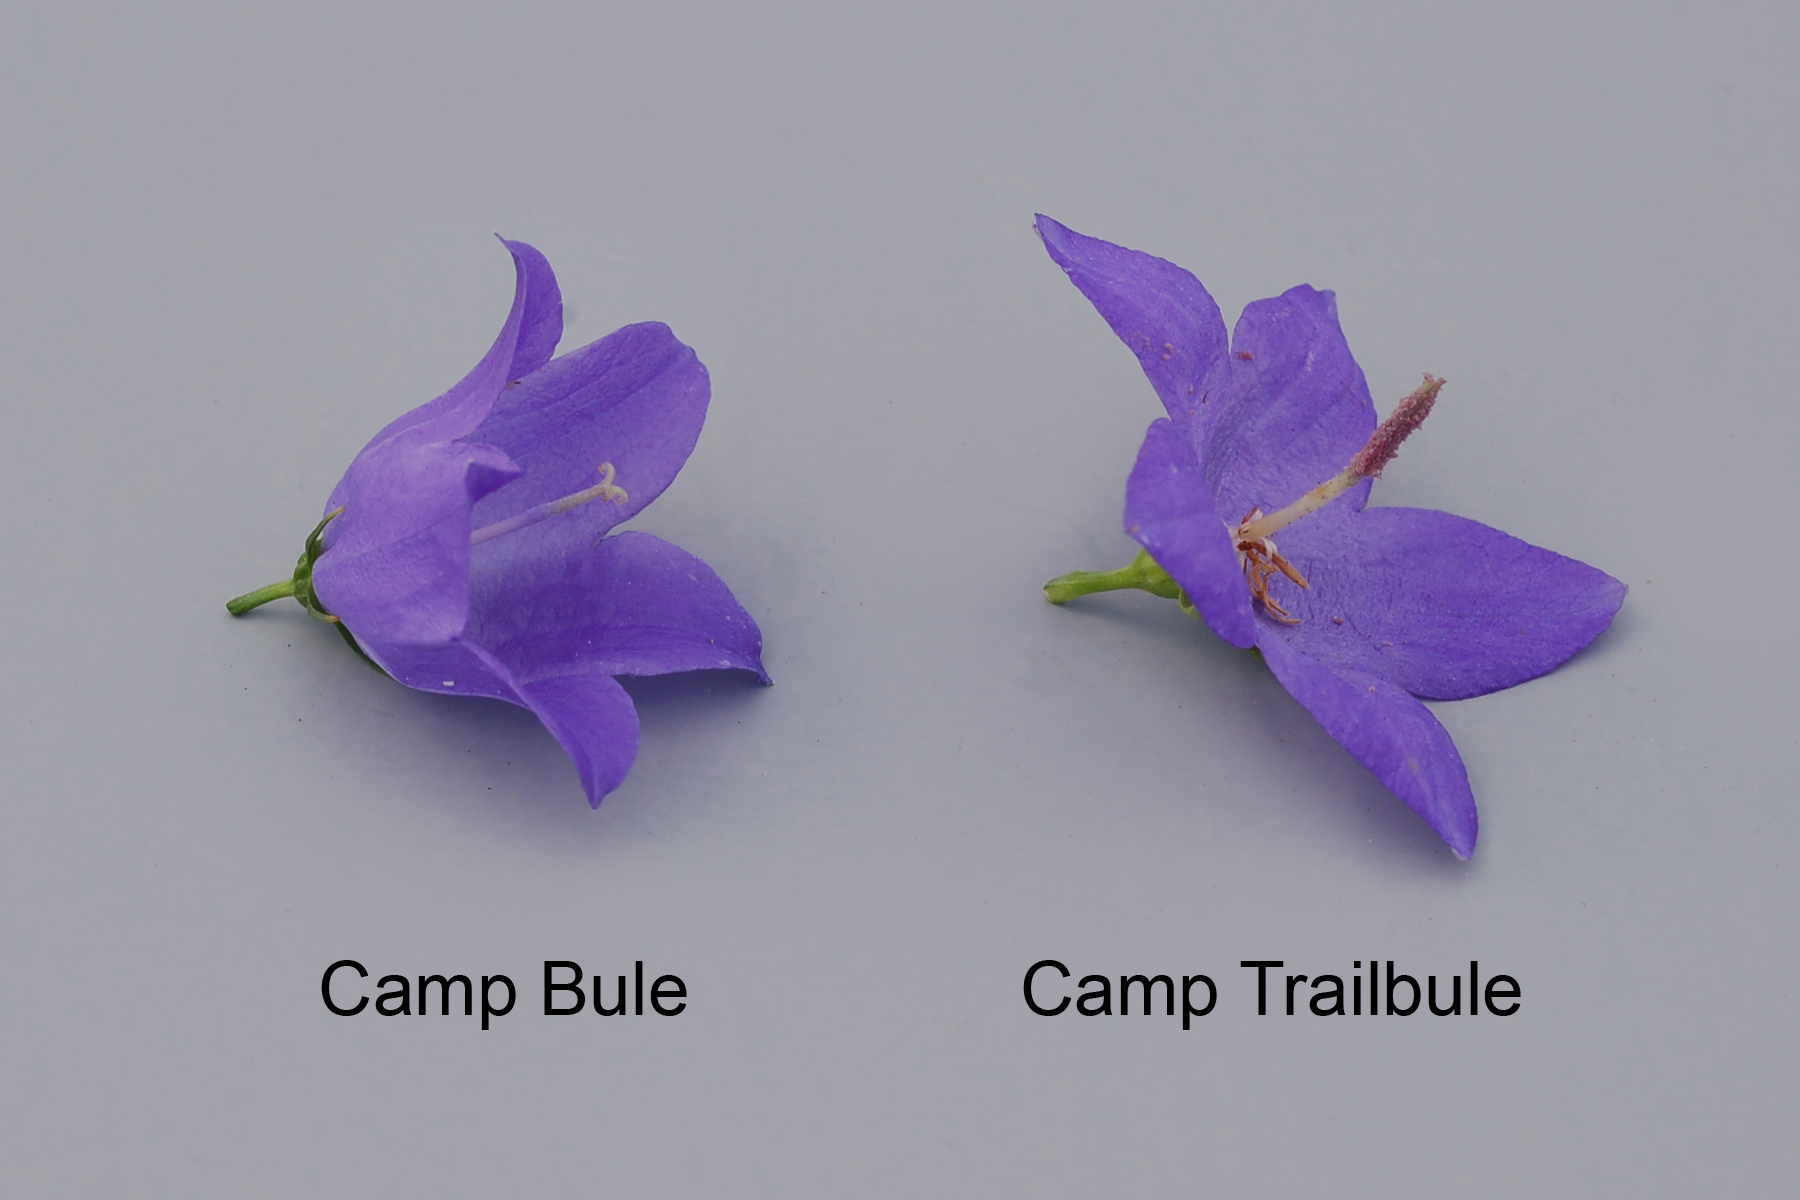 Camp Bule